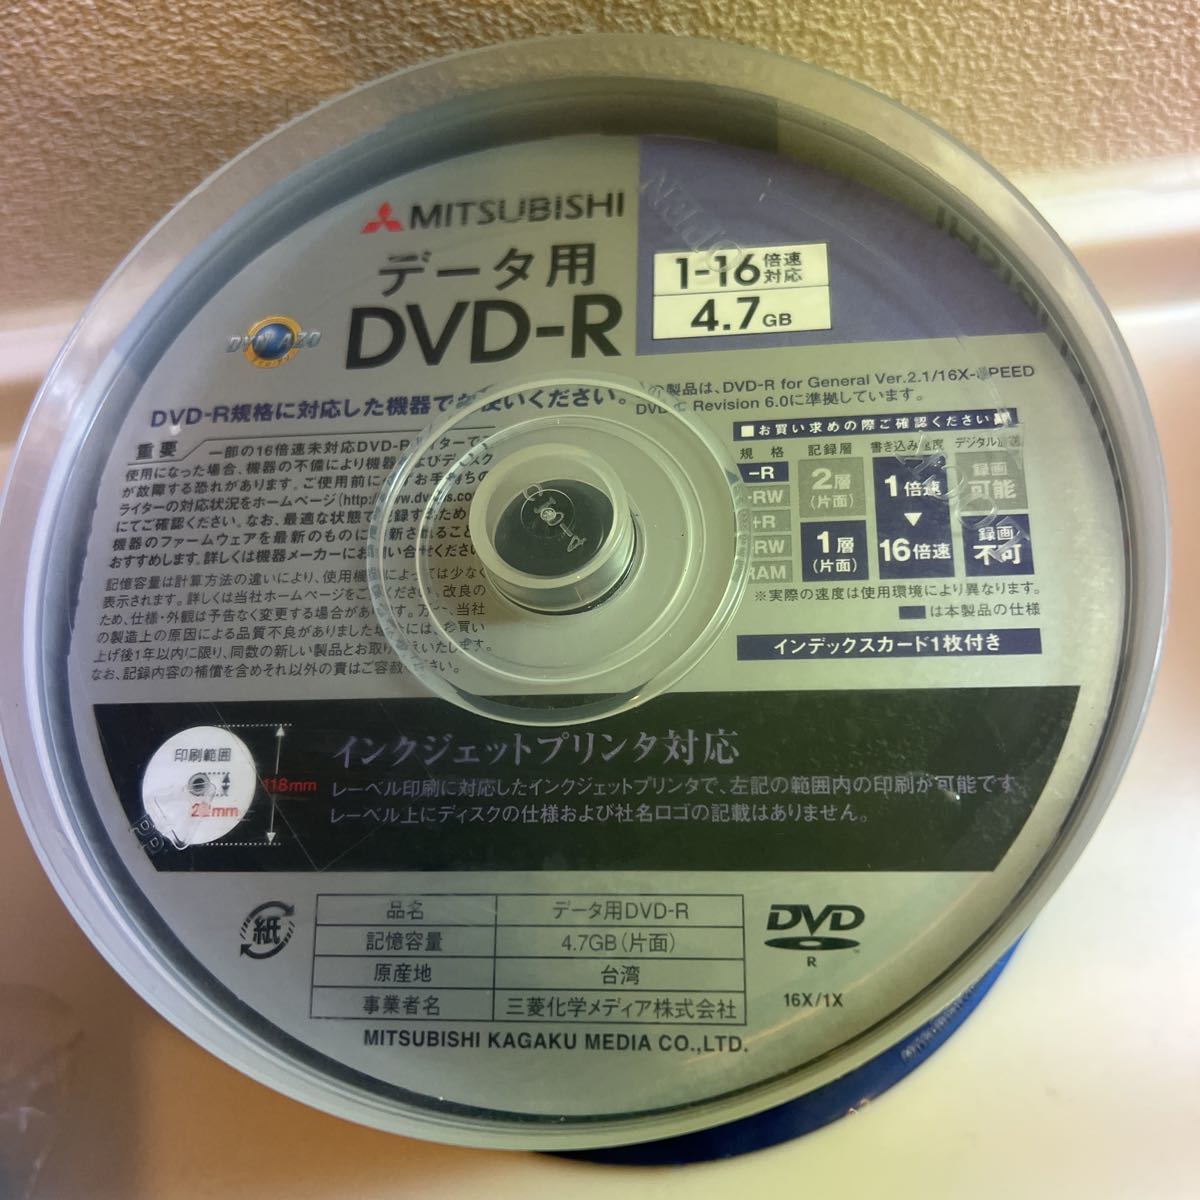 DVD-R 4.7GB 50枚 MITSUBISHI データ用DVD(DVD-R)｜売買された 